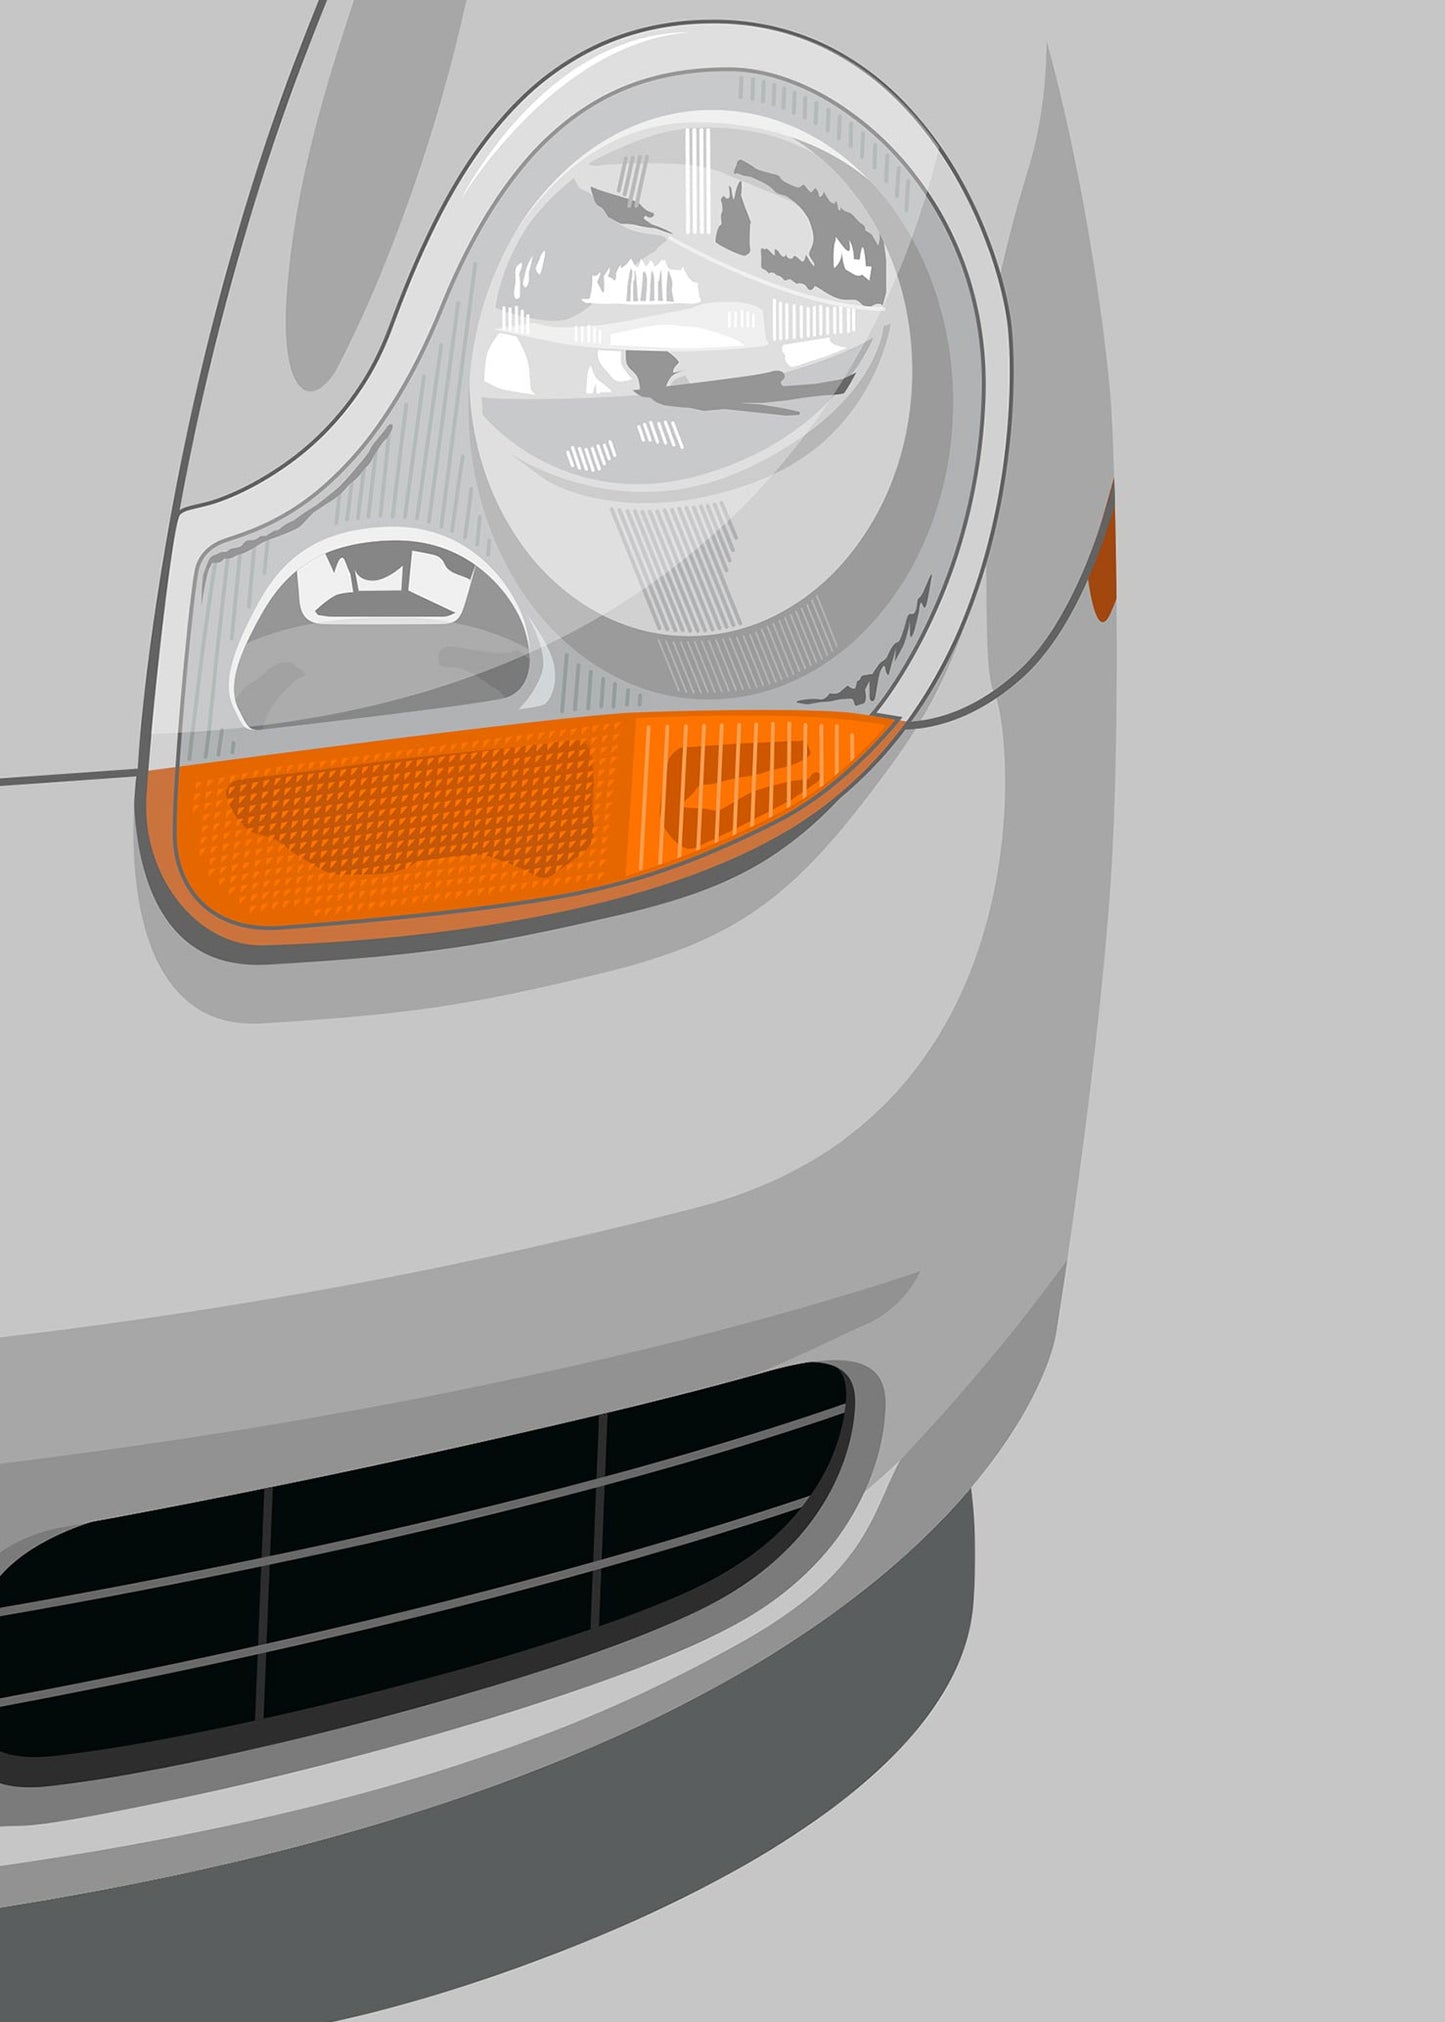 1996 Porsche Boxster (986) Artic Silver - poster print